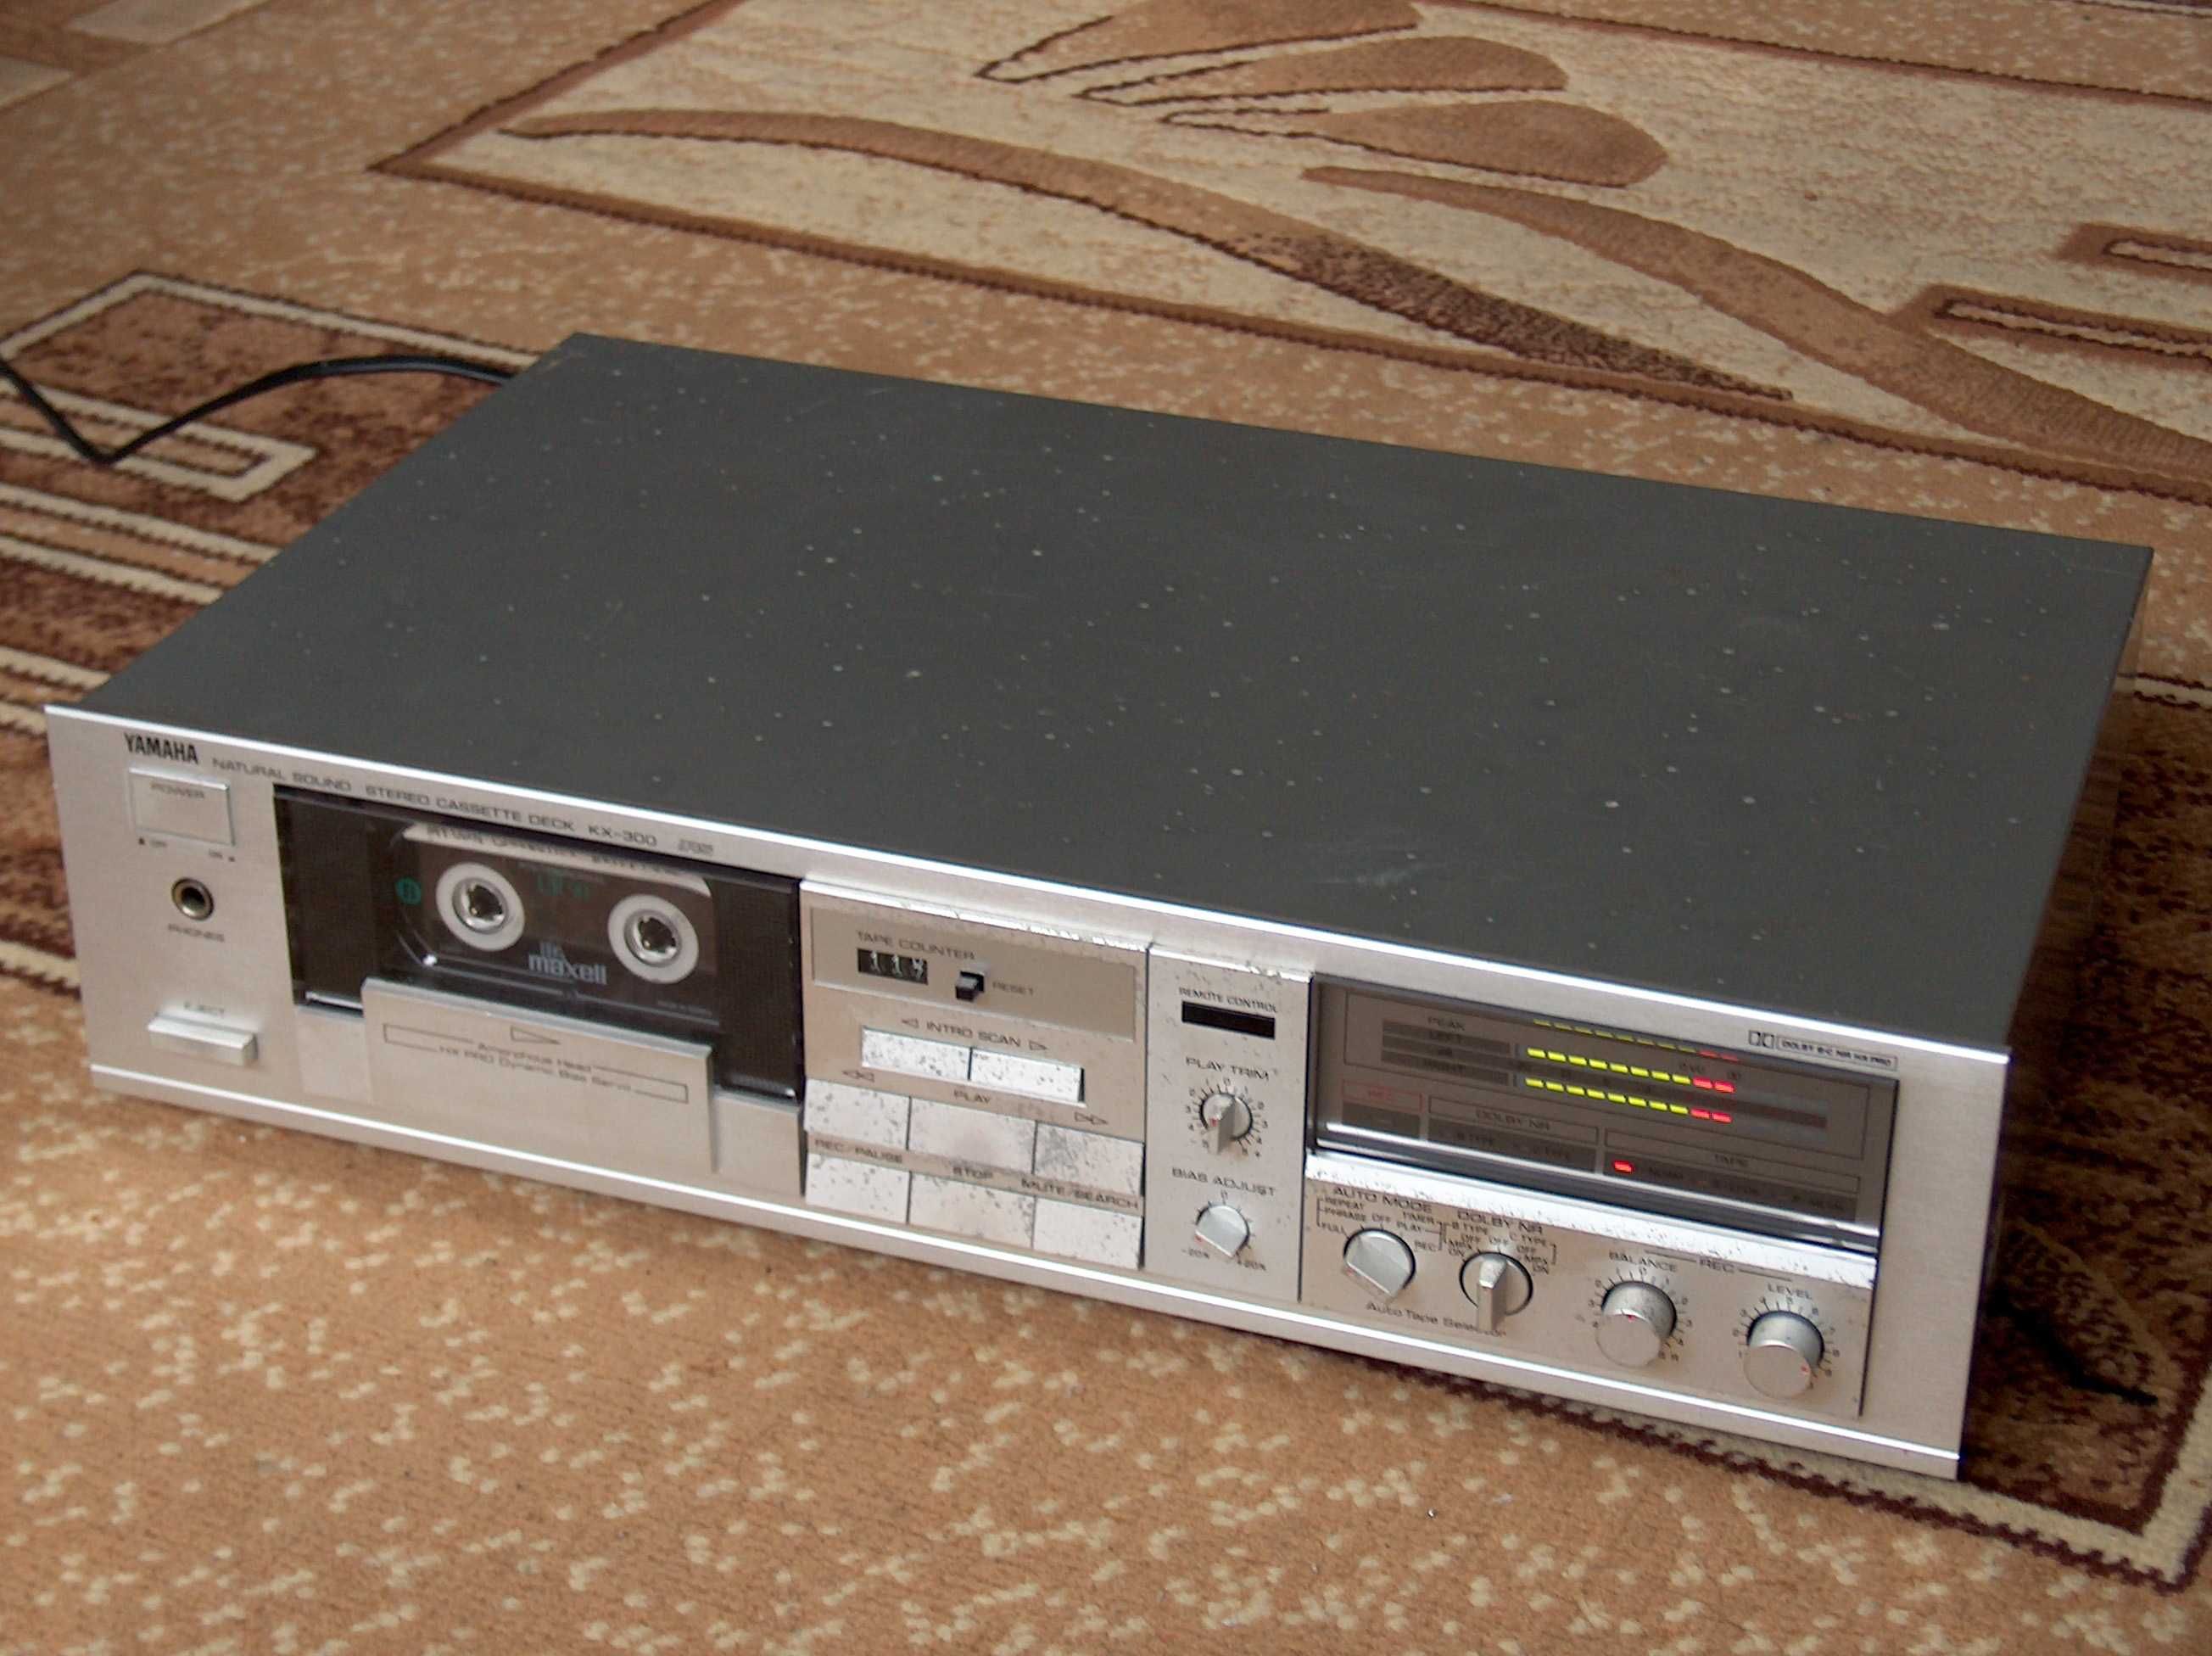 Magnetofon Yamaha KX-300 Dolby B, C, HX Pro srebrny